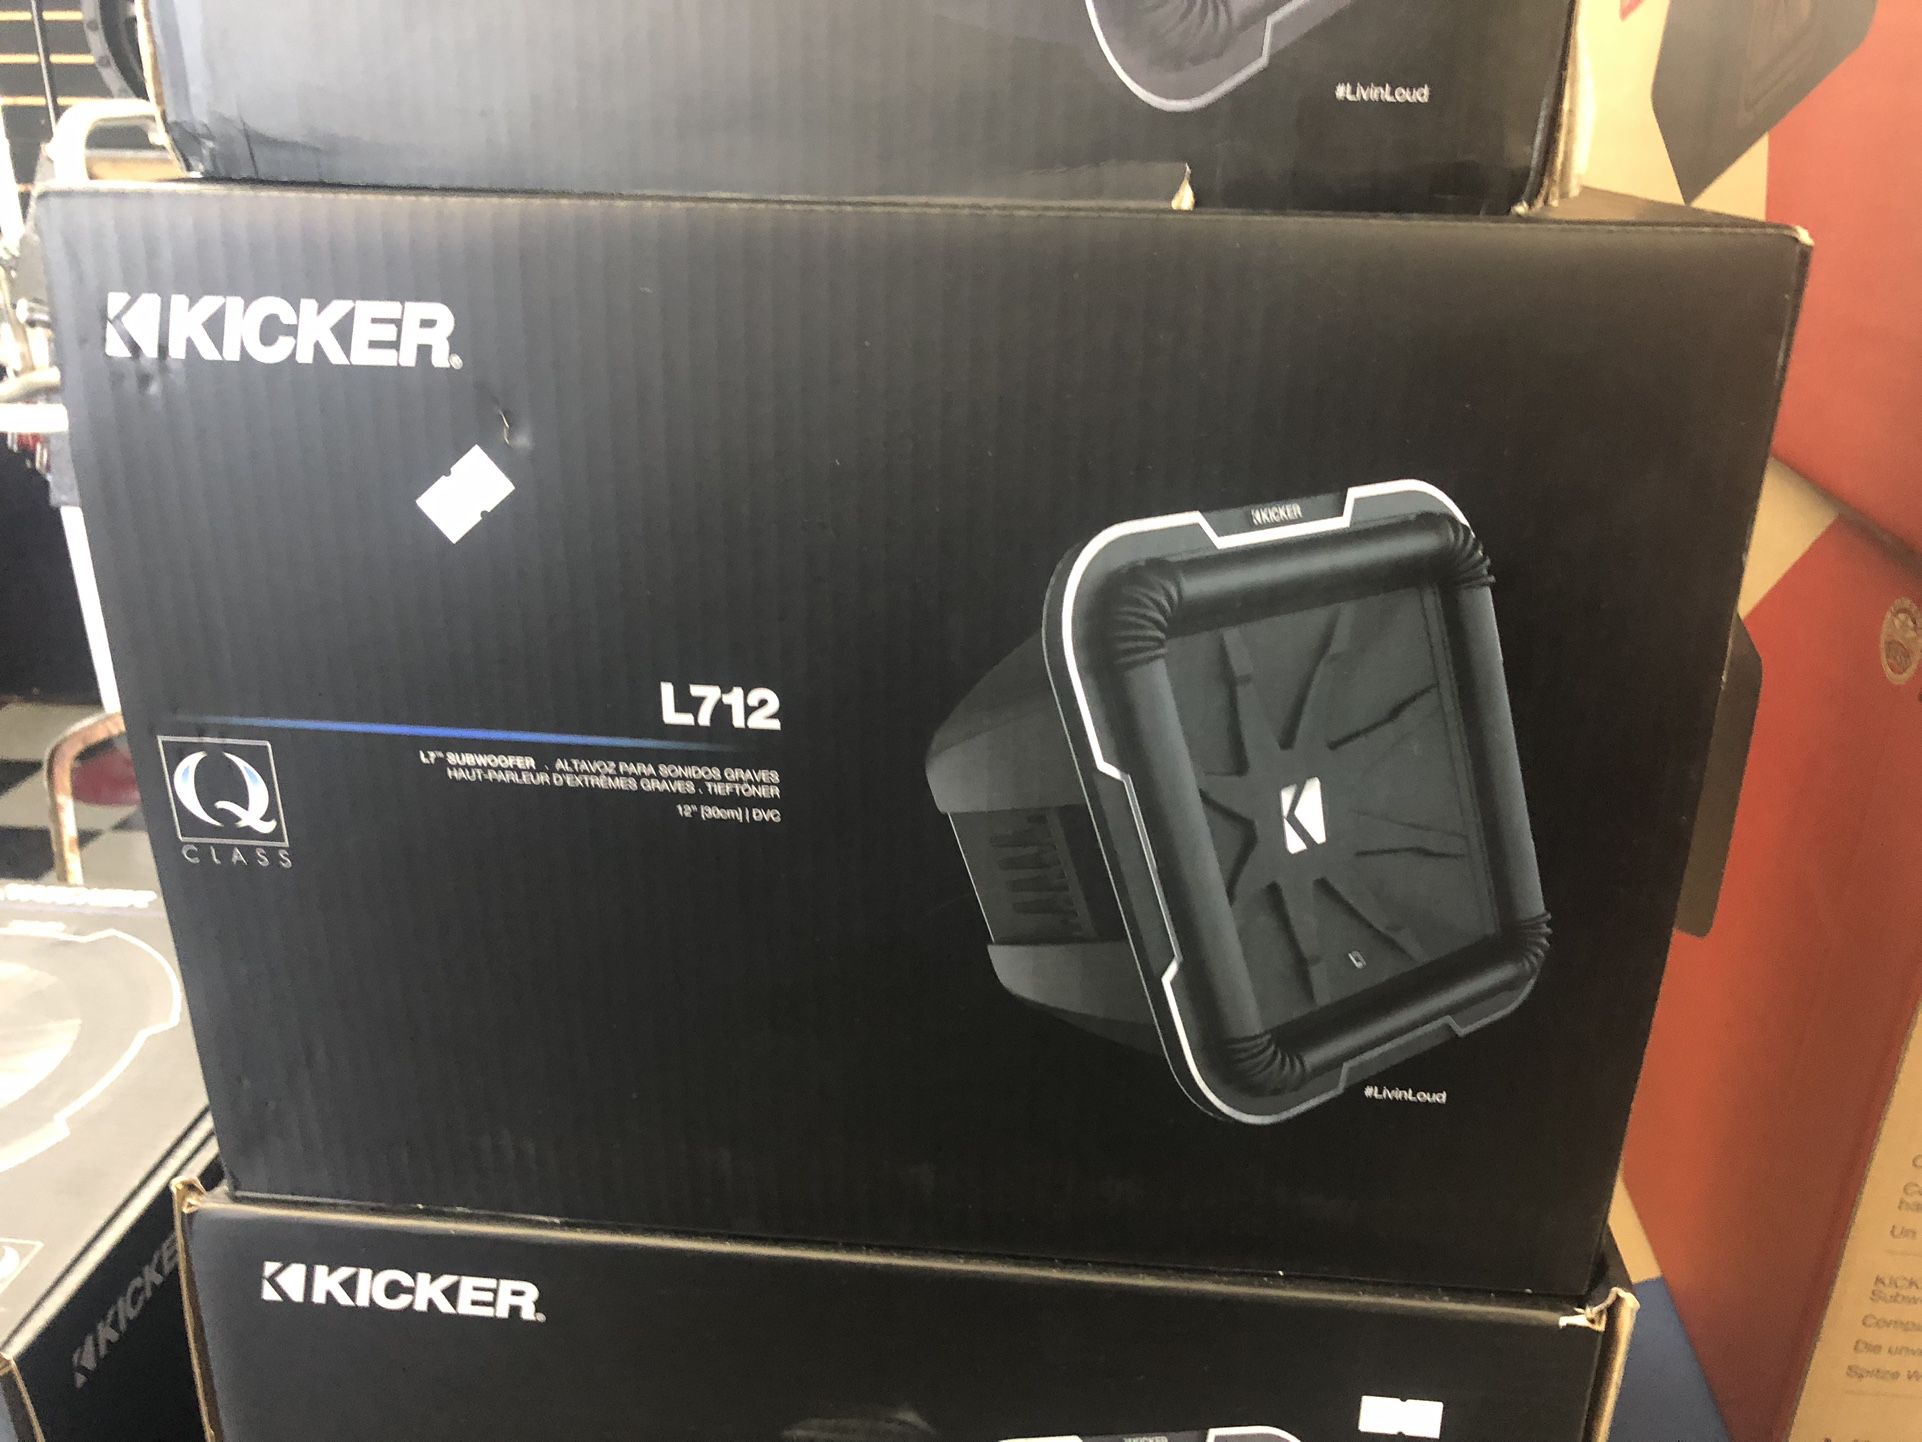 Kicker L7q12 On Sale For 319.99